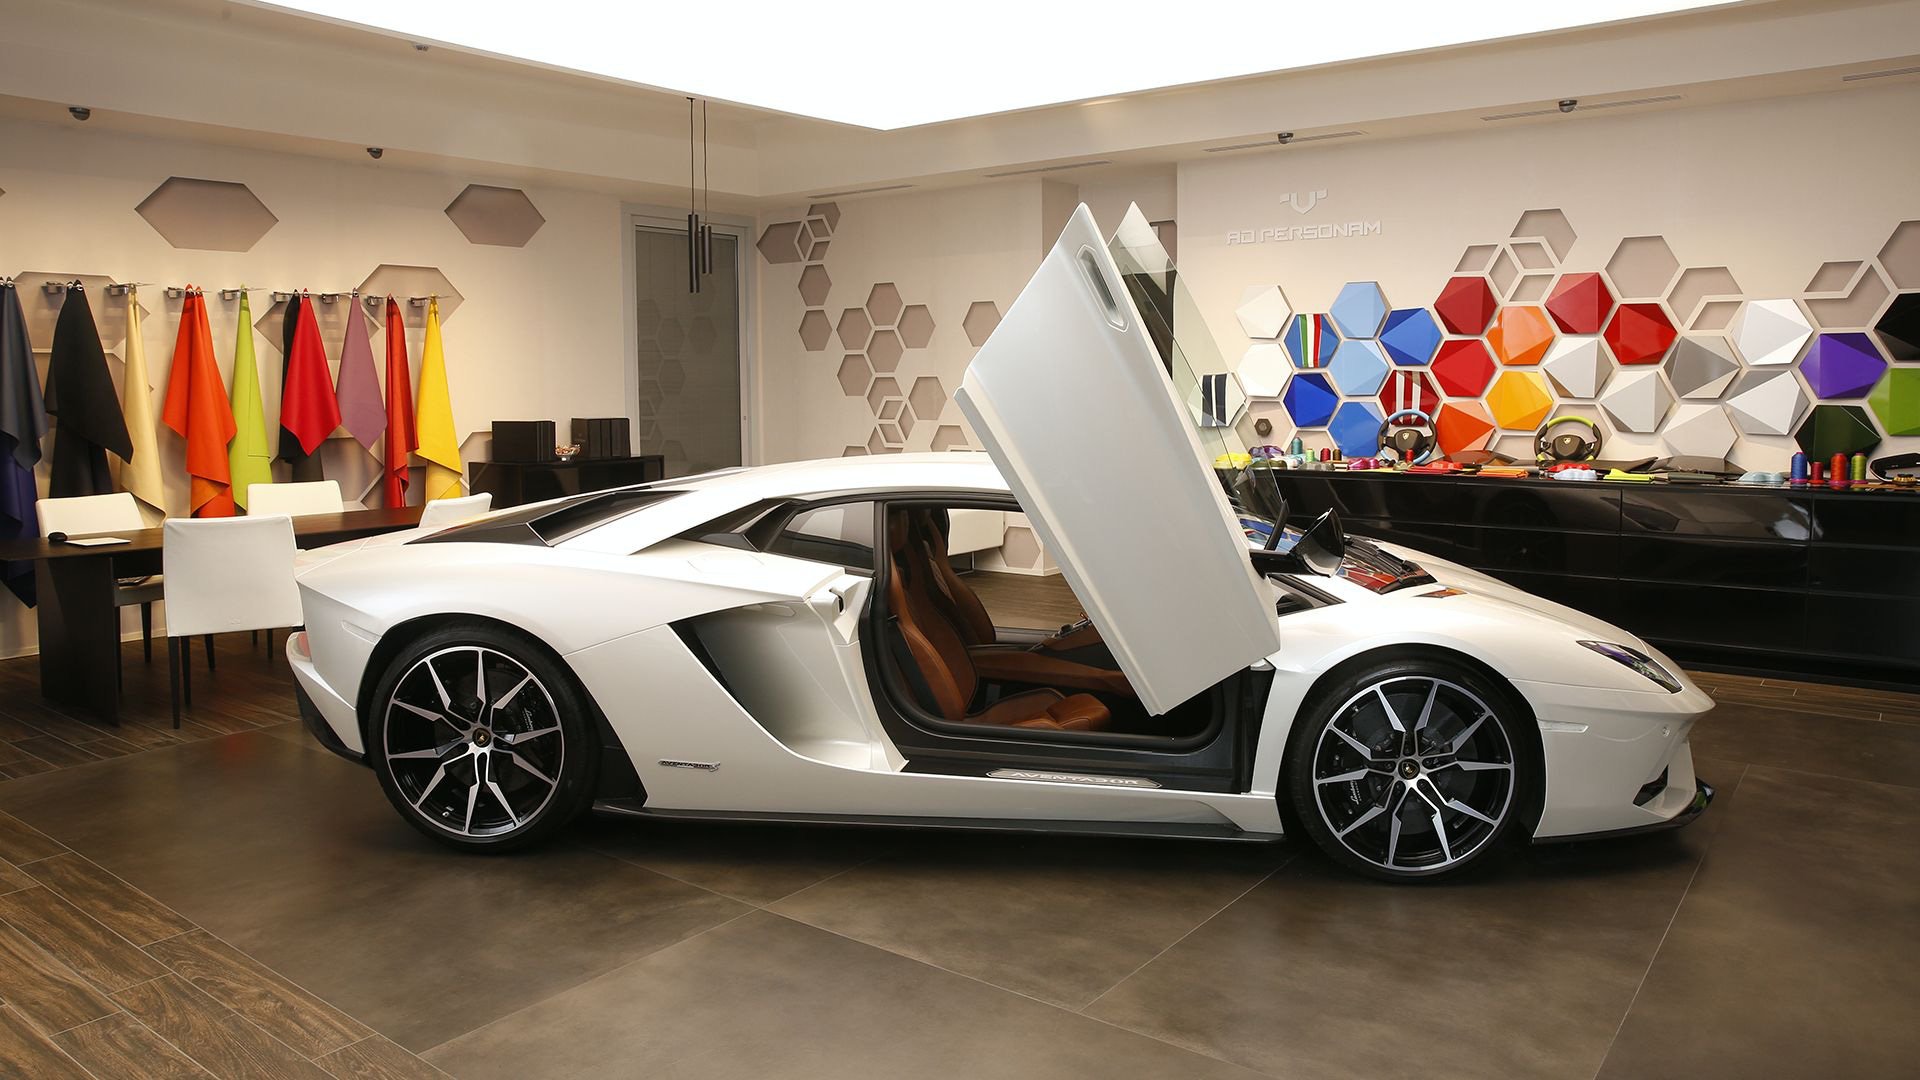 Aventador SVJ chưa là gì về độ hiếm, Lamborghini sản xuất phiên bản đặc biệt giới hạn 10 chiếc - Ảnh 2.